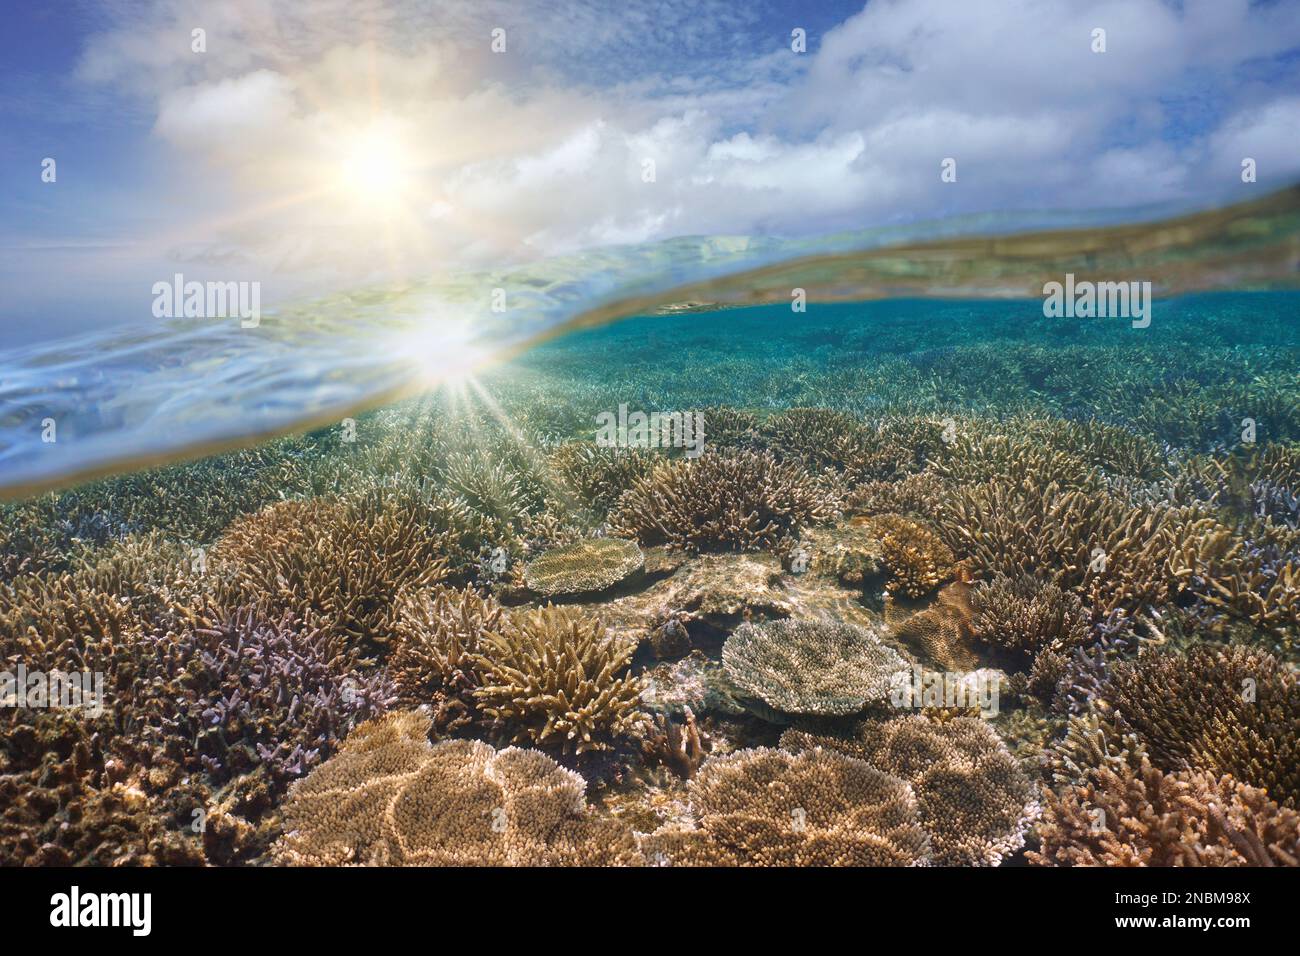 Sonnenlicht am Himmel und Korallenriff unter Wasser, geteilter Blick über und unter der Wasseroberfläche, südpazifische Meereslandschaft, Ozeanien Stockfoto